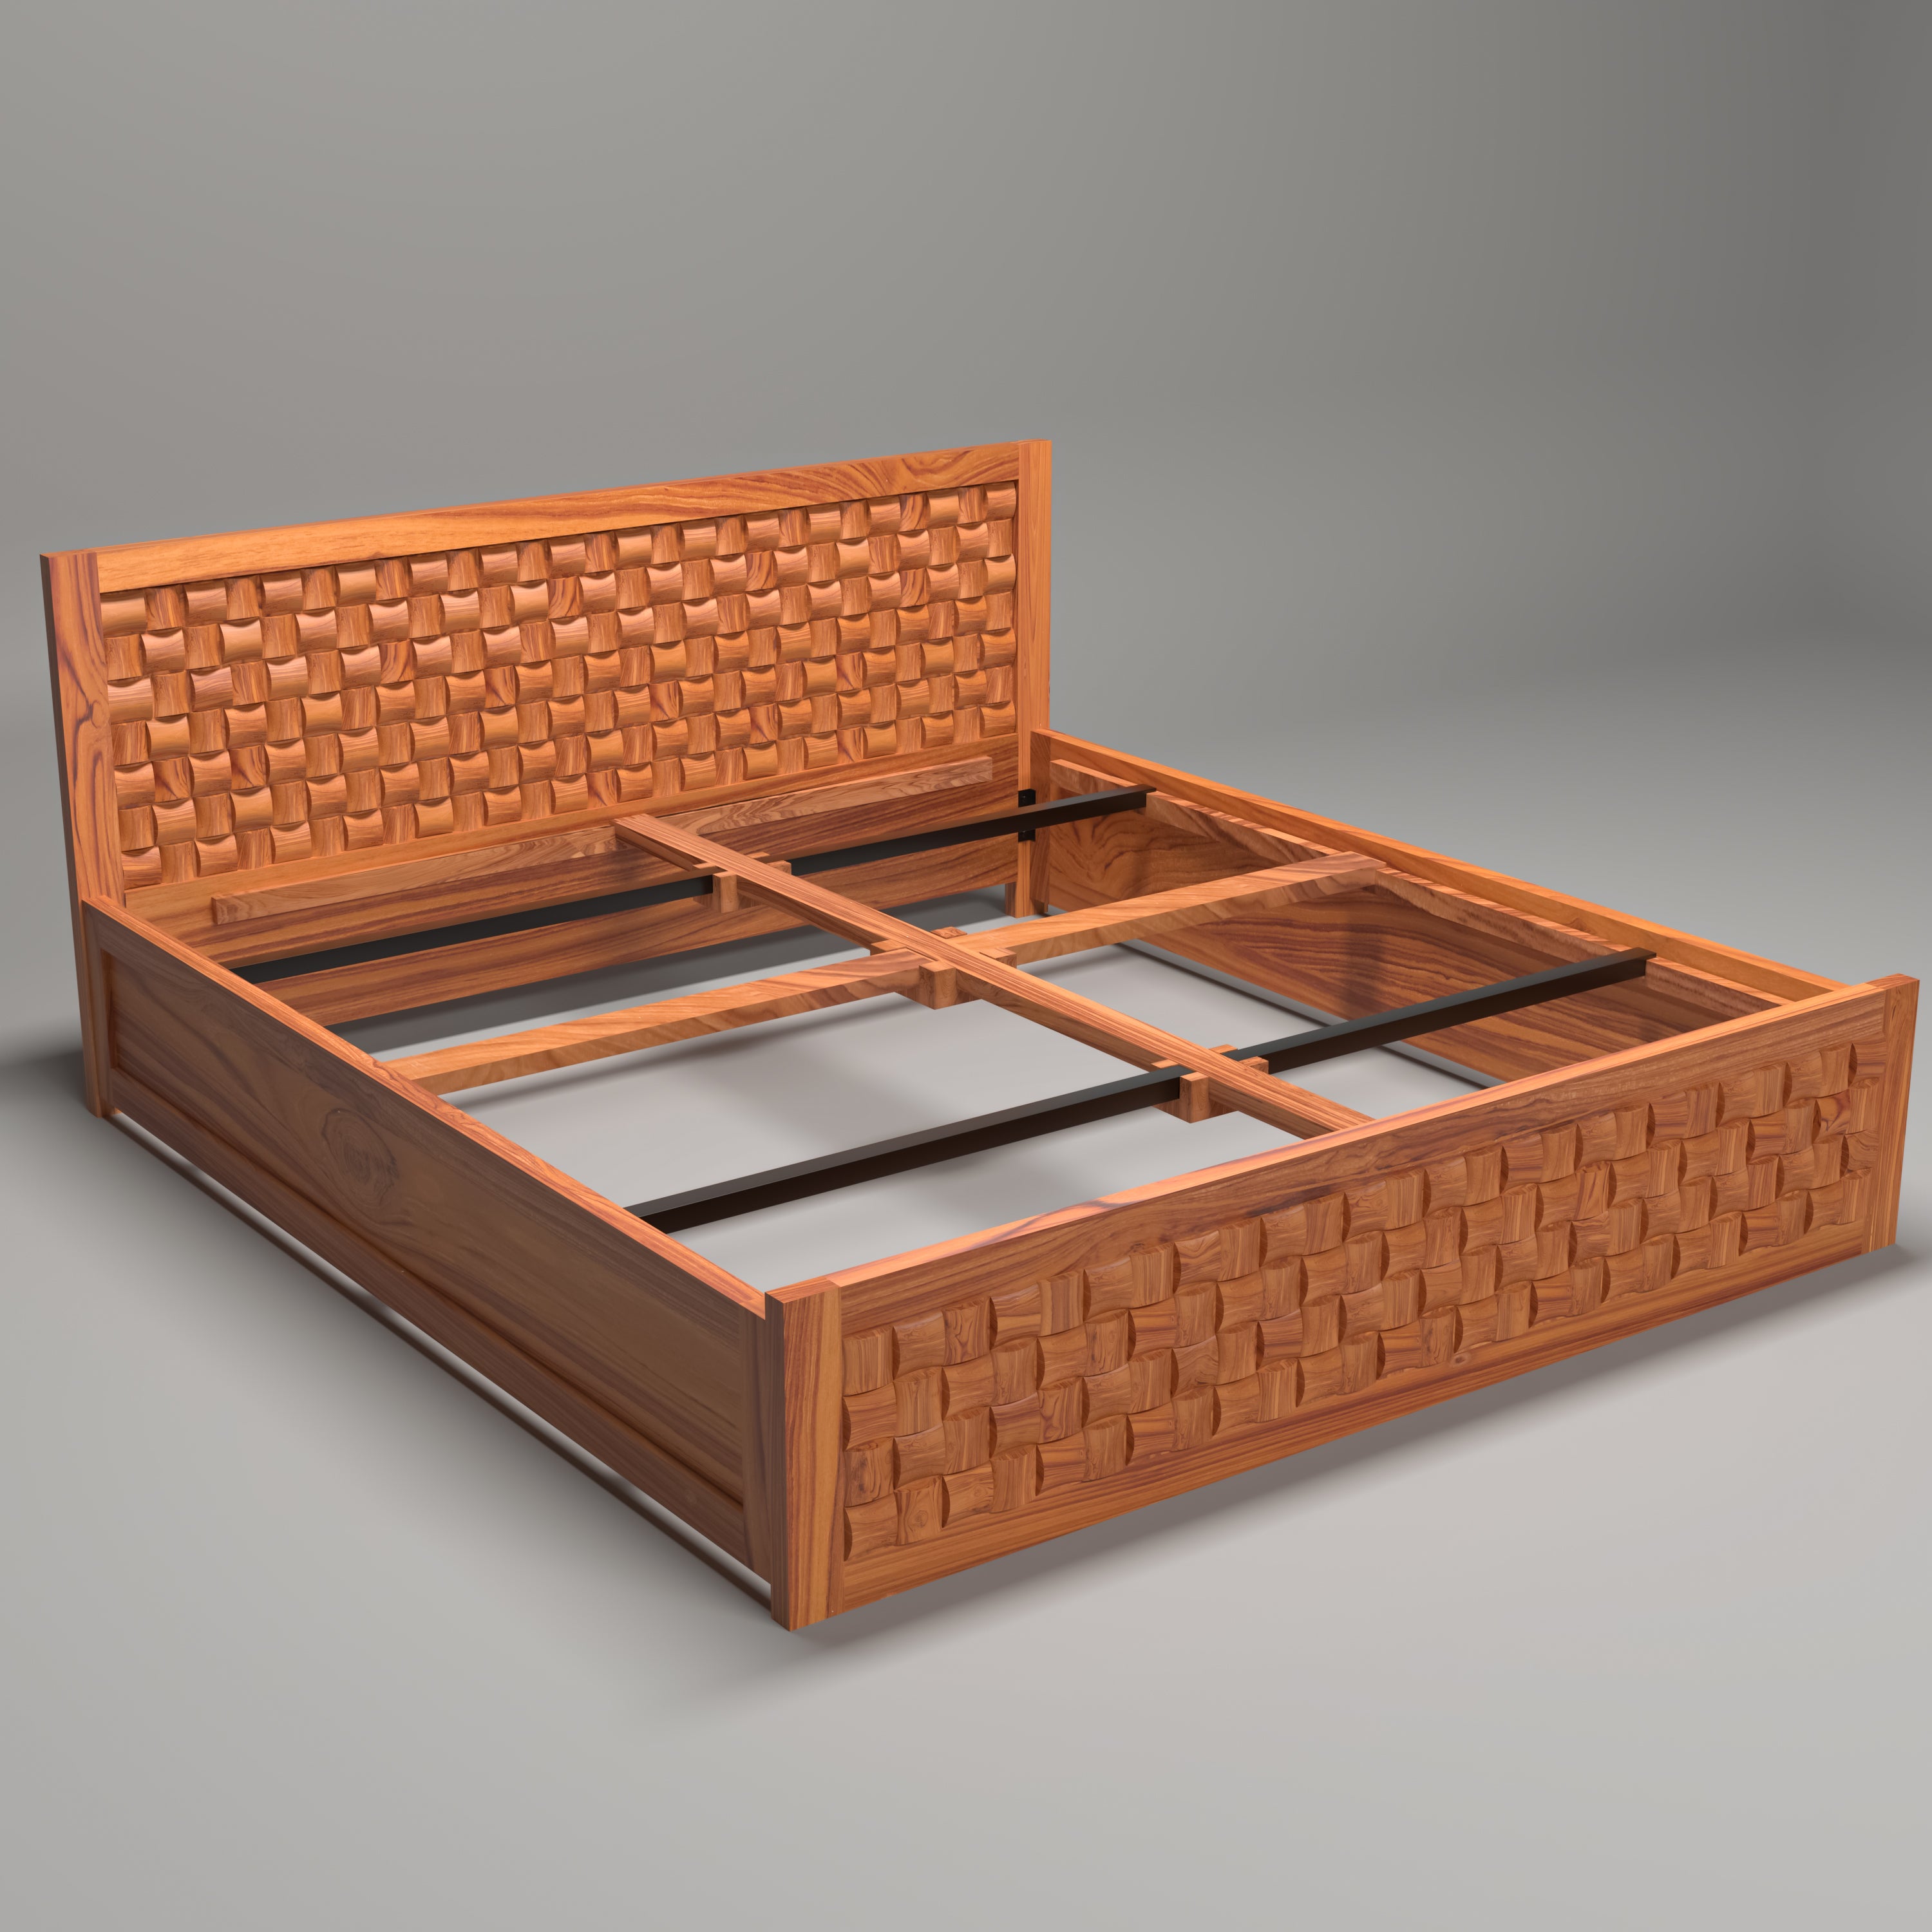 Wooden Regal designed Bed Teak wood Bed